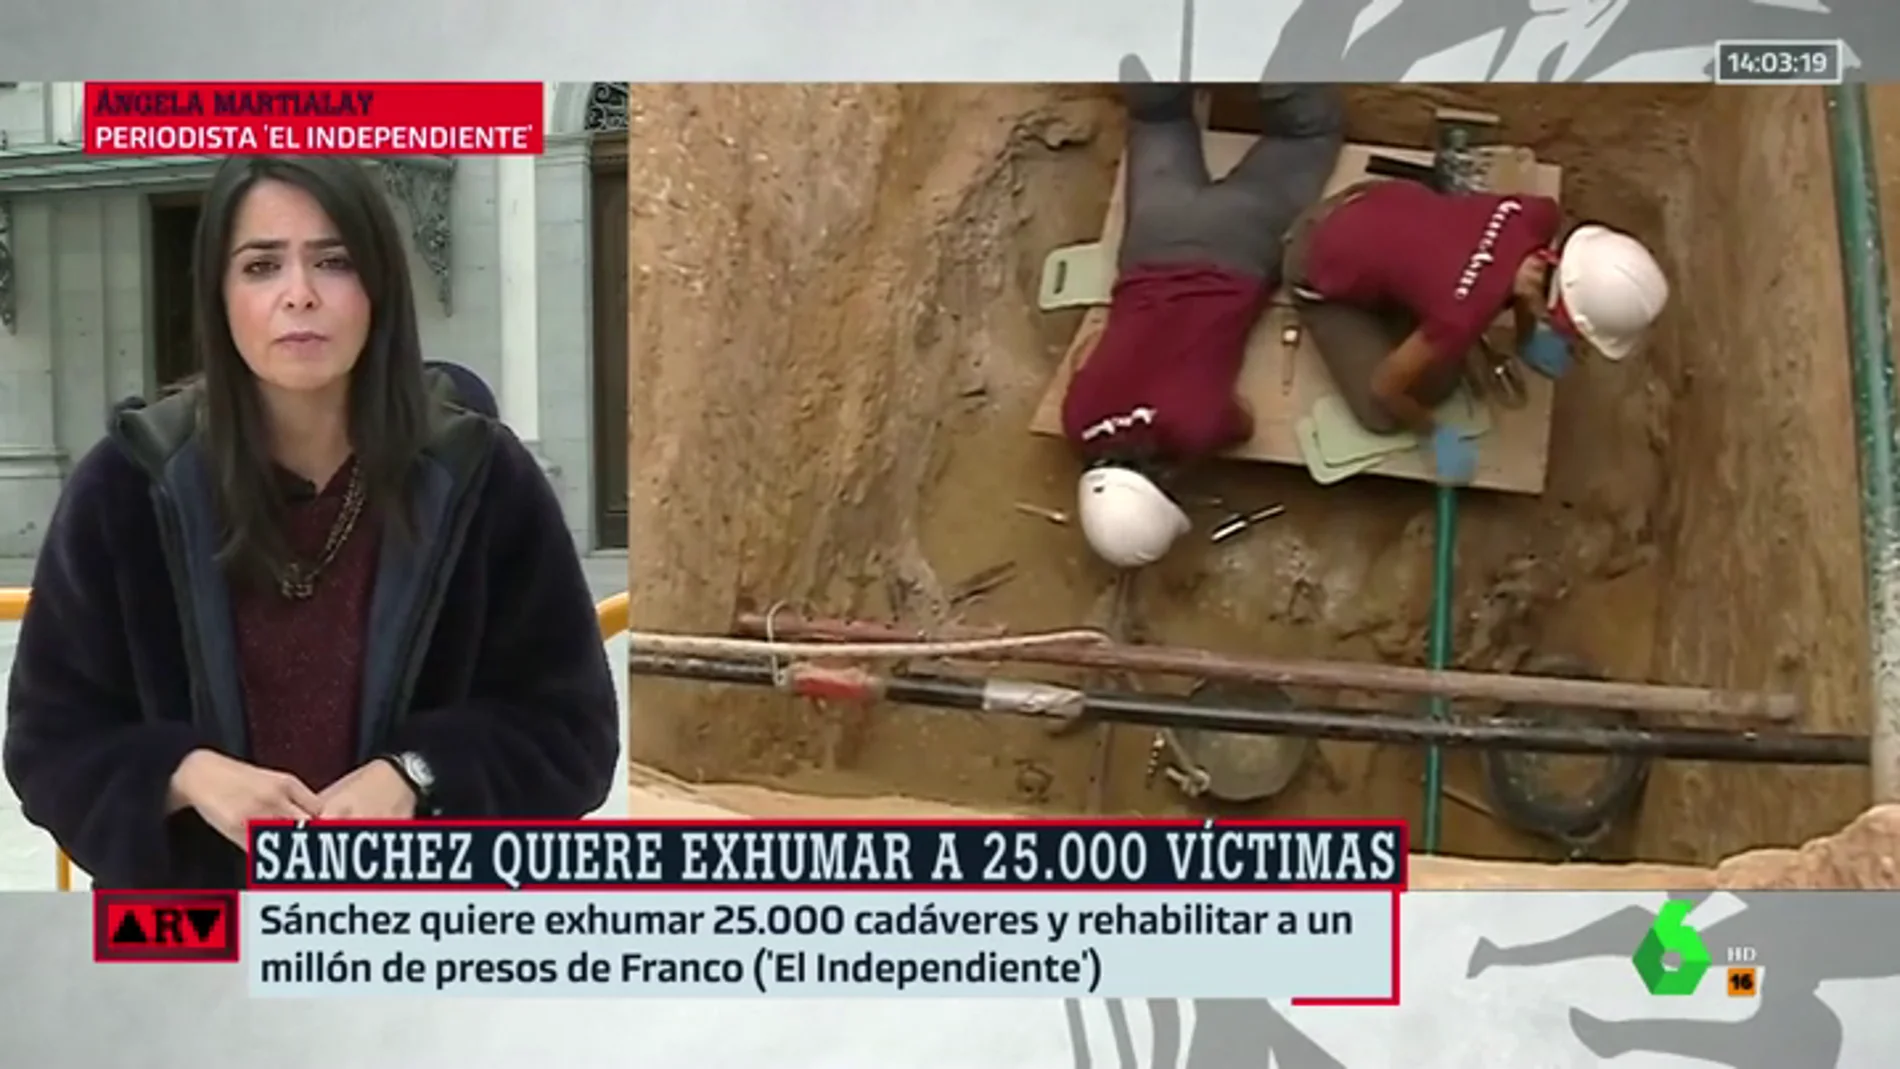 Sánchez quiere exhumar 25.000 cadáveres y rehabilitar a un millón de presos de Franco